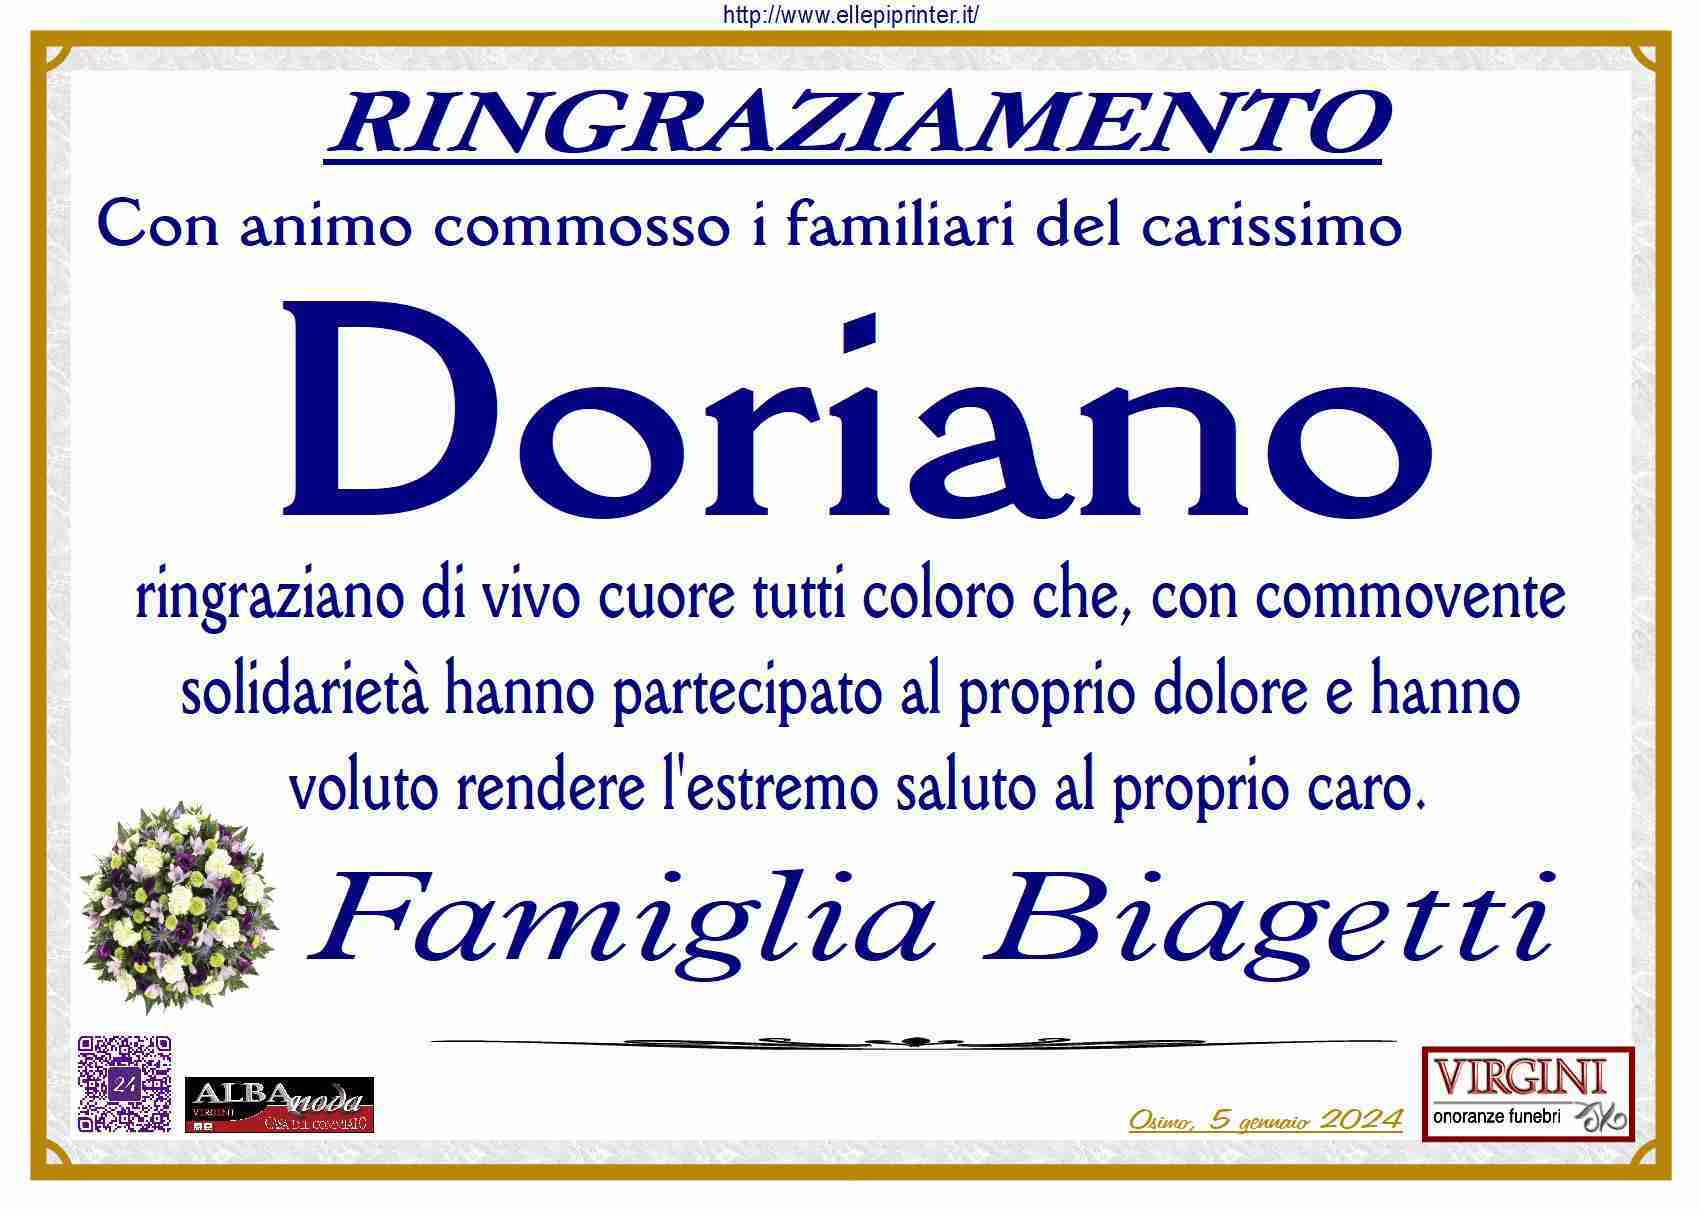 Doriano Biagetti